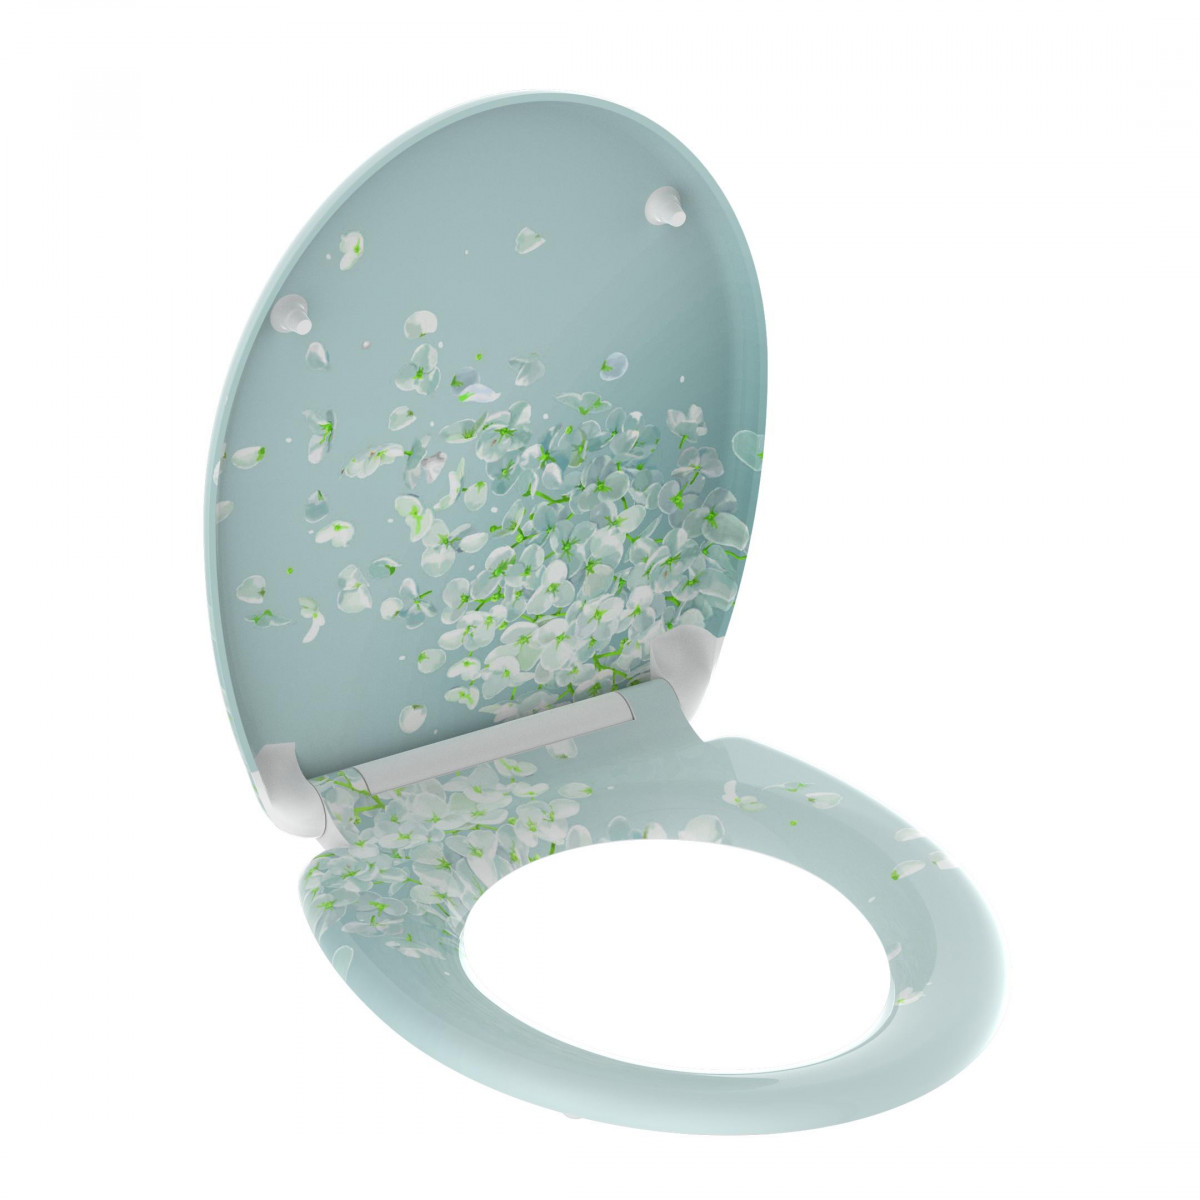 Duroplast WC-Sitz FLOWER IN THE WIND, mit Absenkautomatik und Schnellverschluss